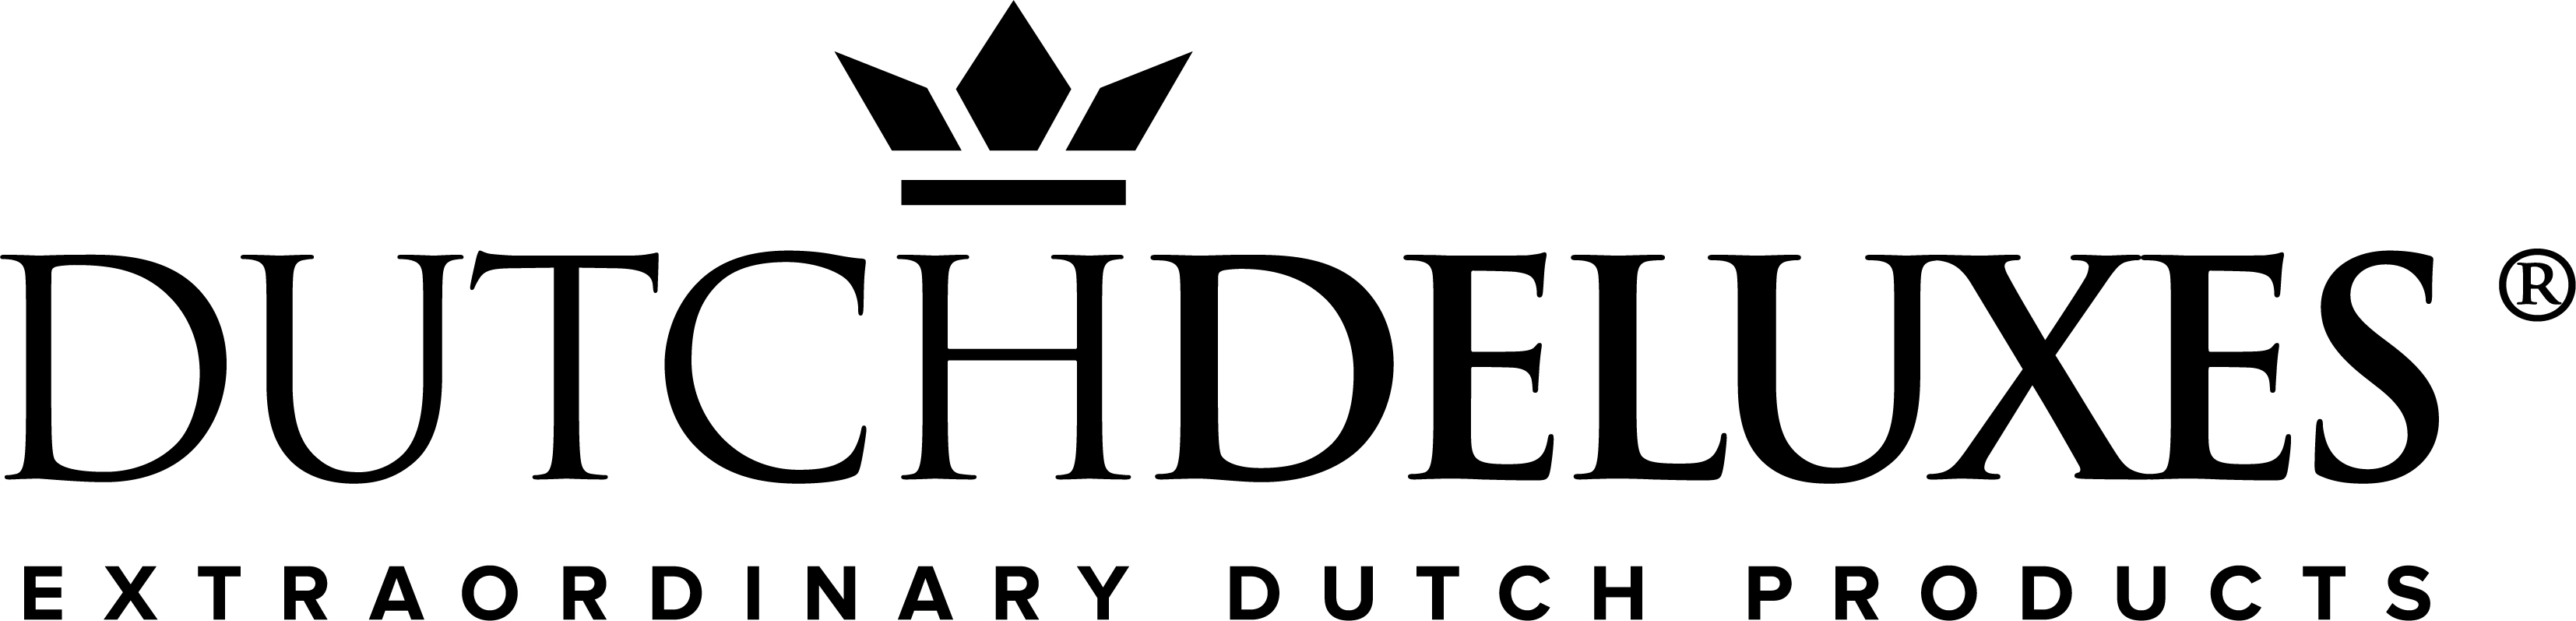 Dutchdeluxes